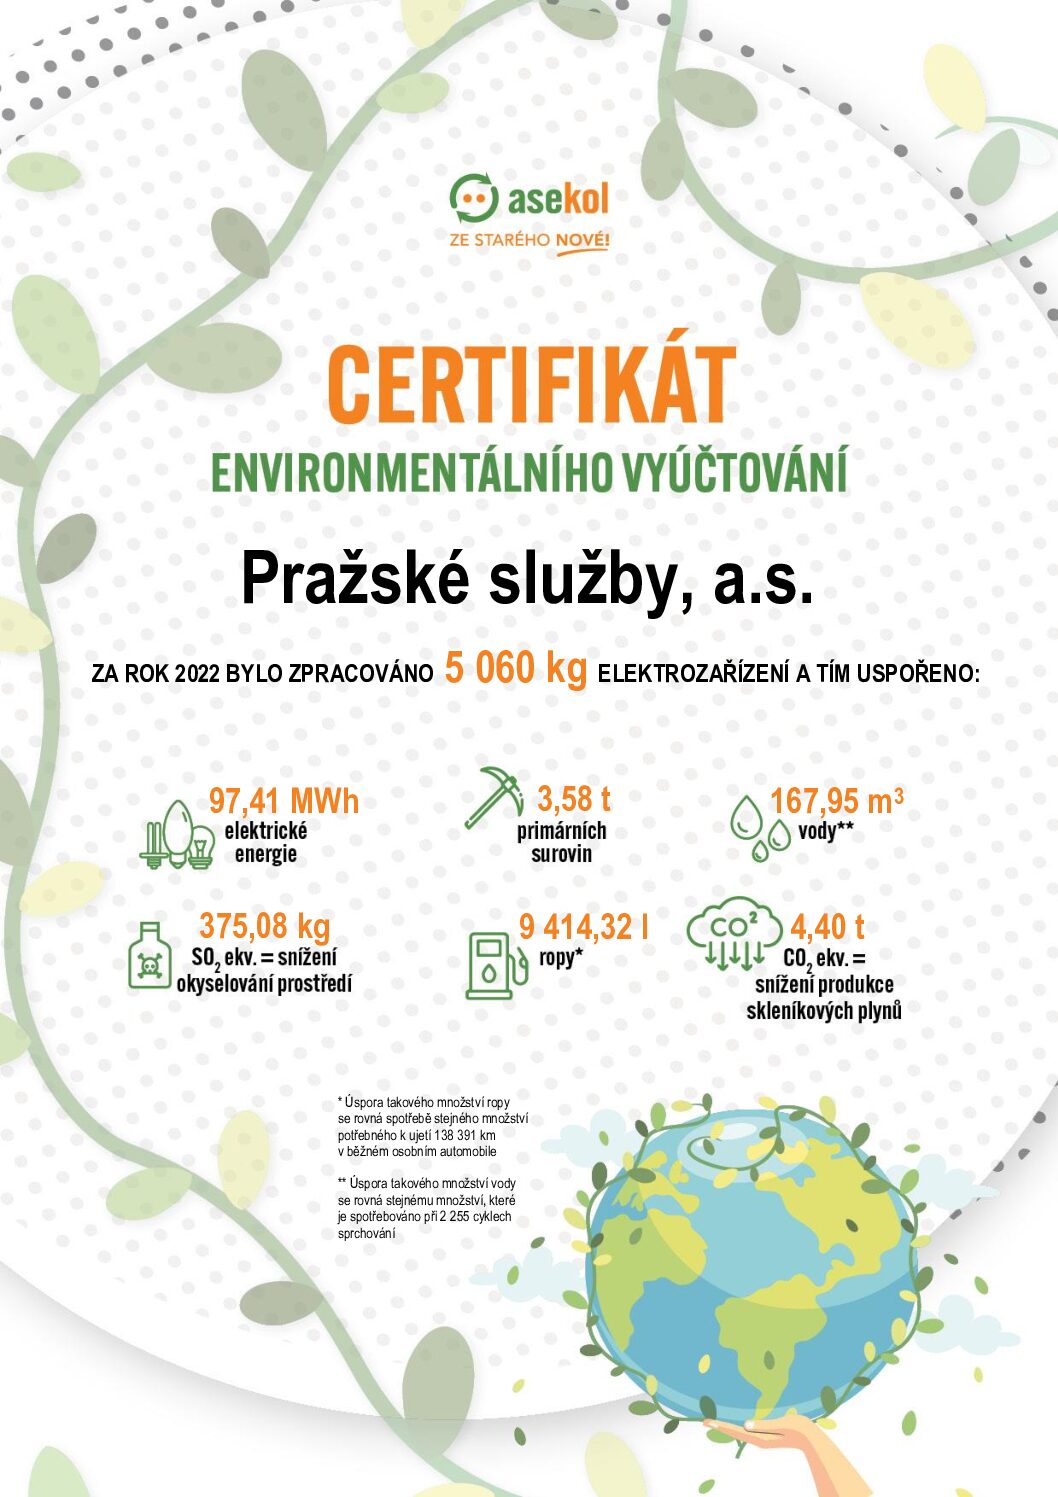 Pražské služby obdržely certifikát environmentálního vyúčtování